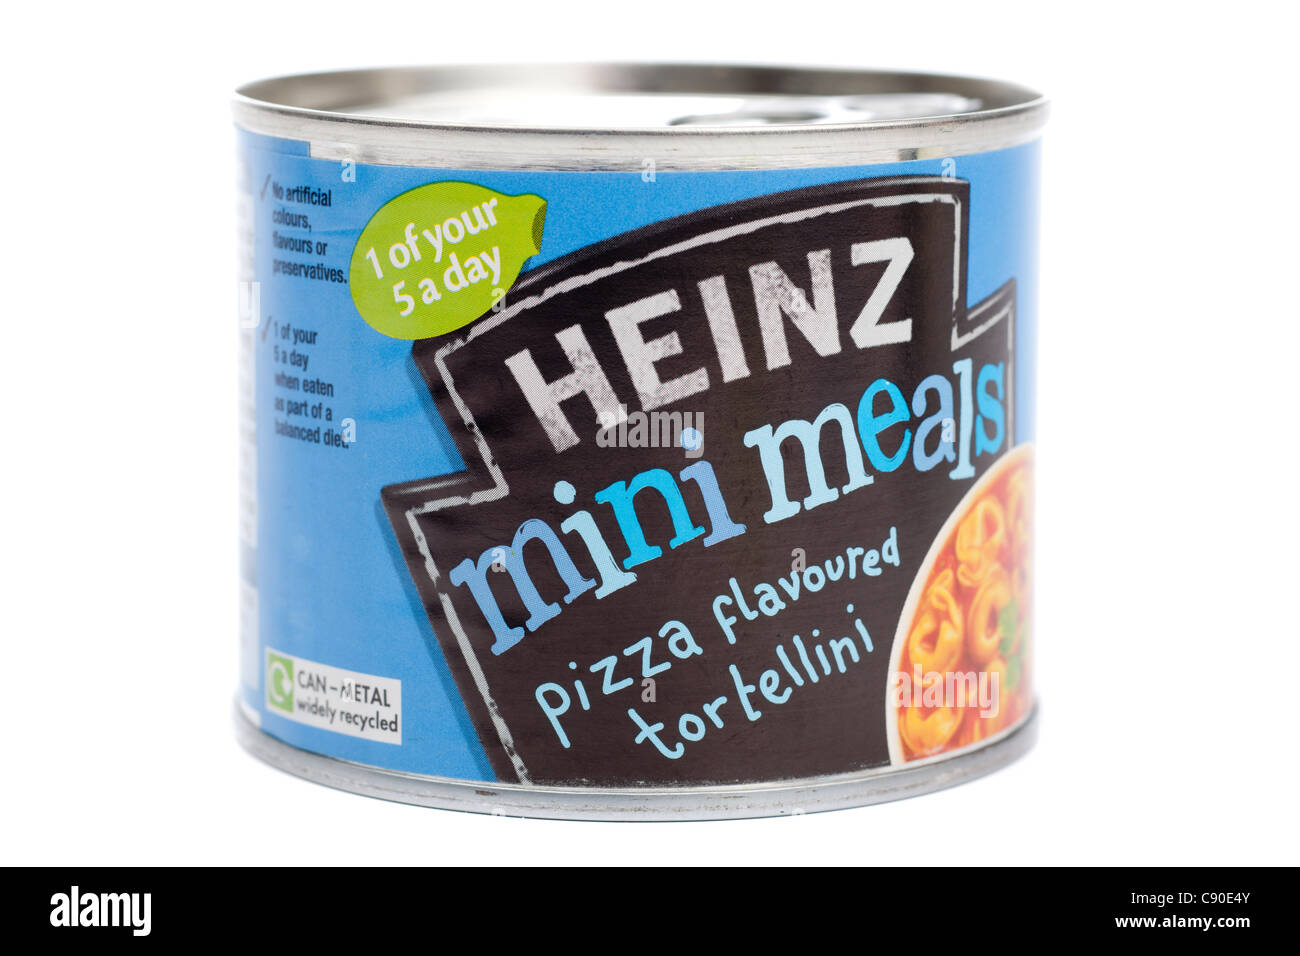 Petite boîte de Heinz mini pizza repas tortellini aromatisé Banque D'Images